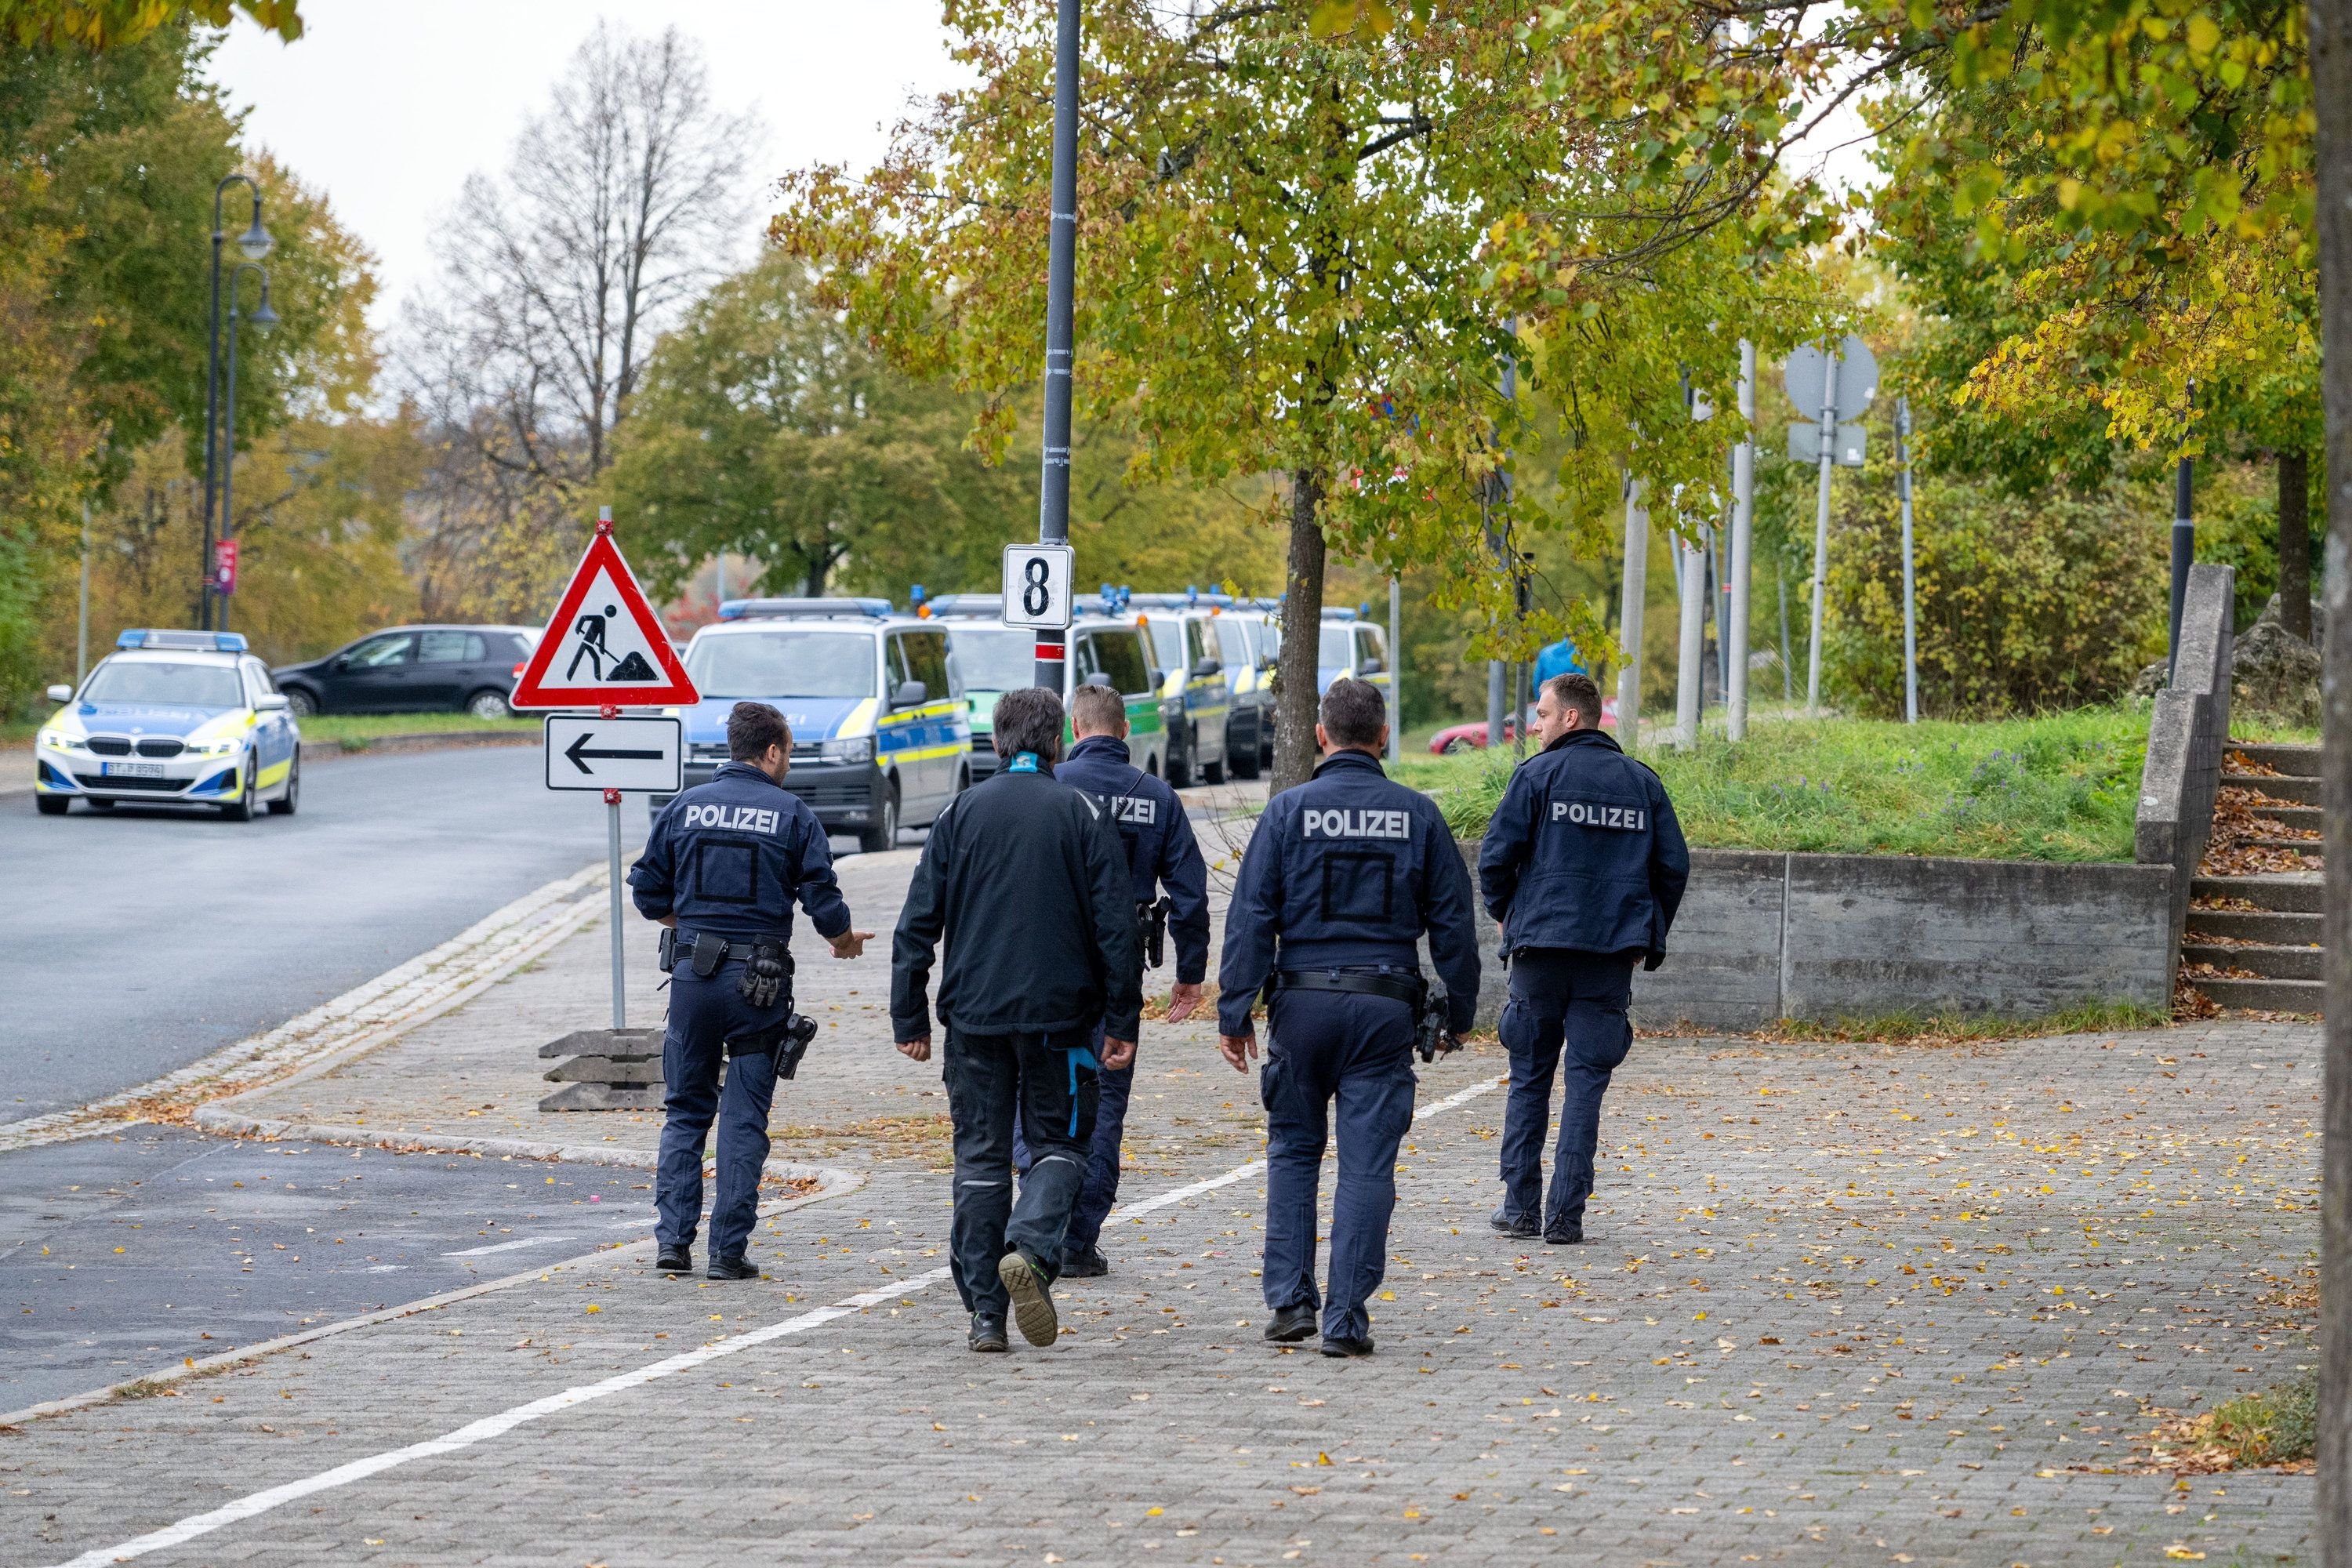 Stadthalle Rostock: Polizei ermittelt erneut wegen K.o.-Tropfen